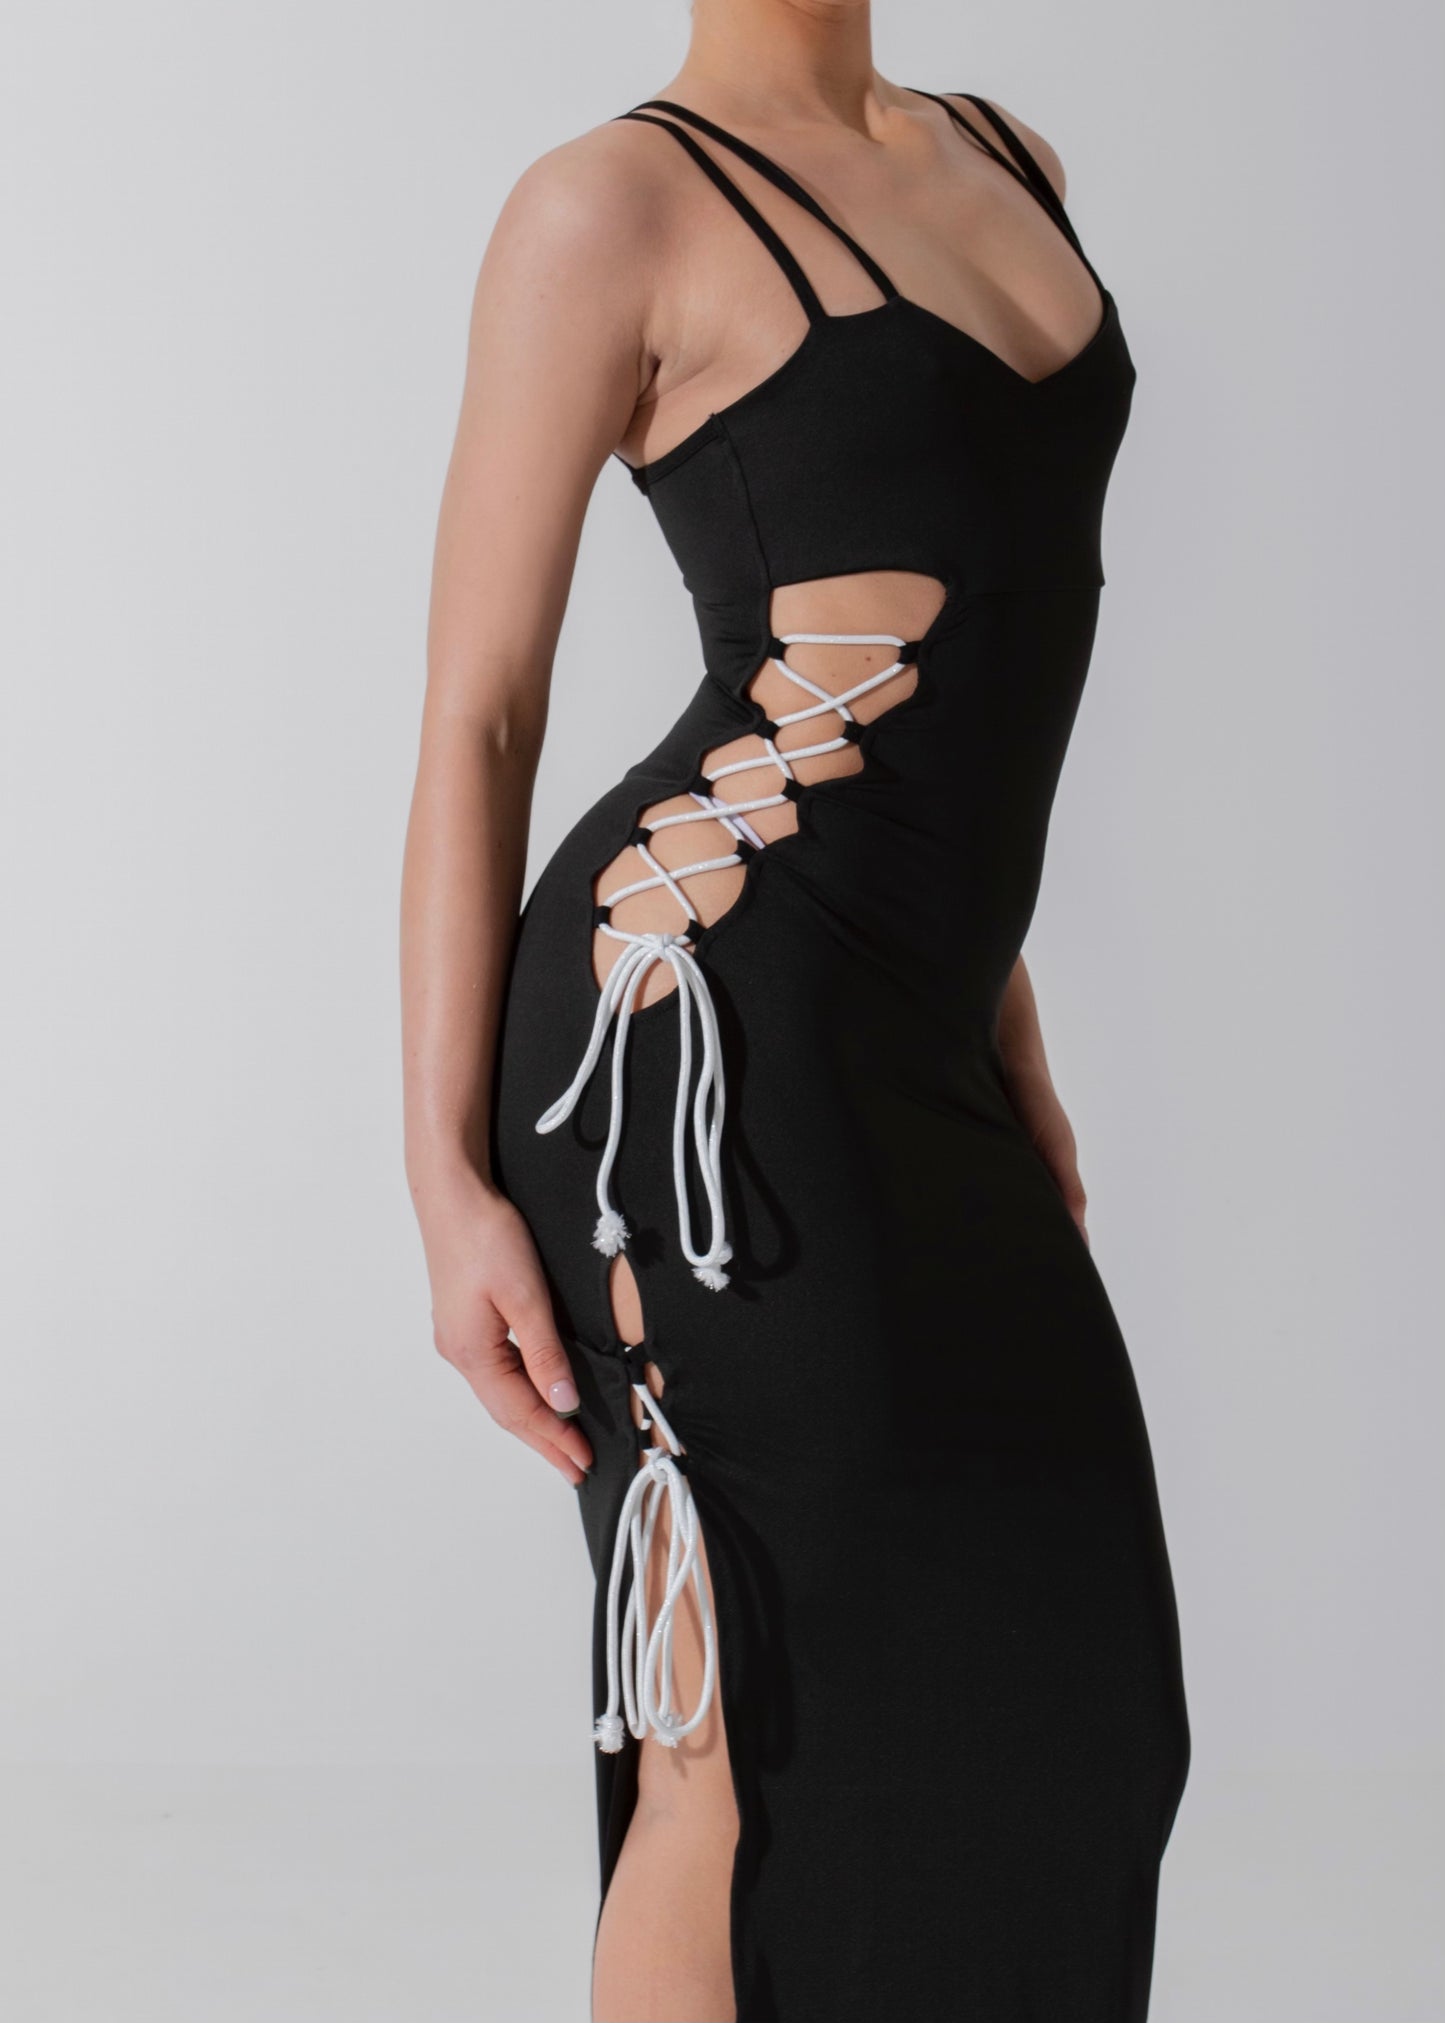 SHEA - Black Midi Dress Lace Up